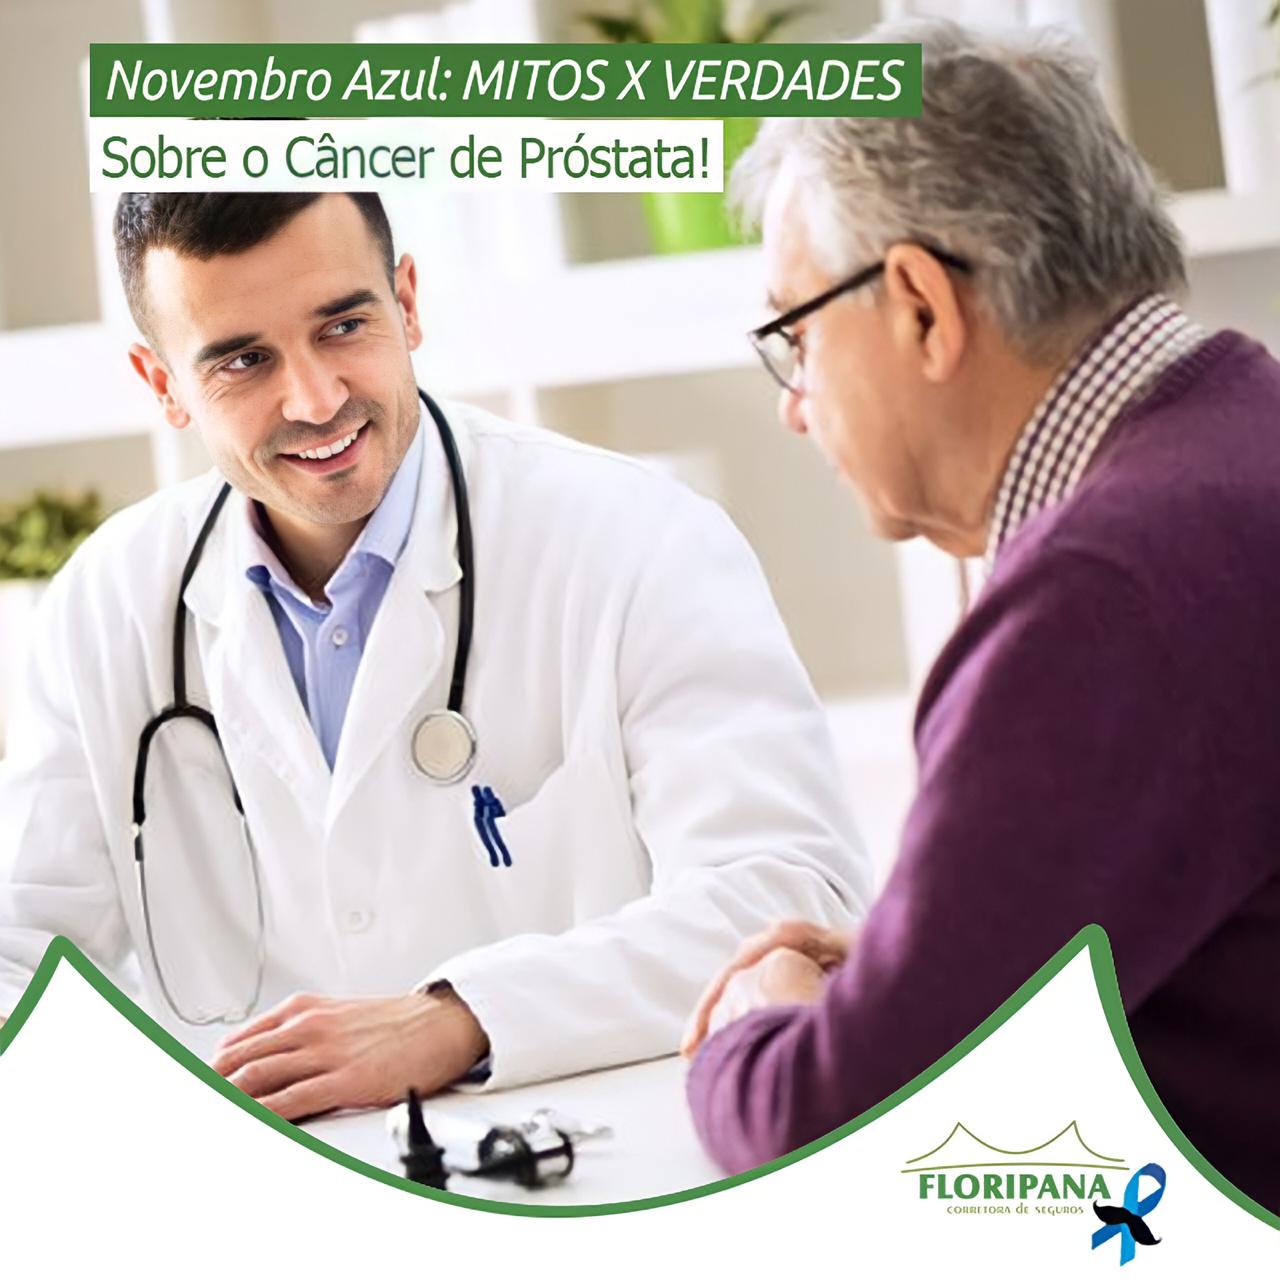 Novembro Azul: MITOS X VERDADES sobre o Câncer de Próstata!